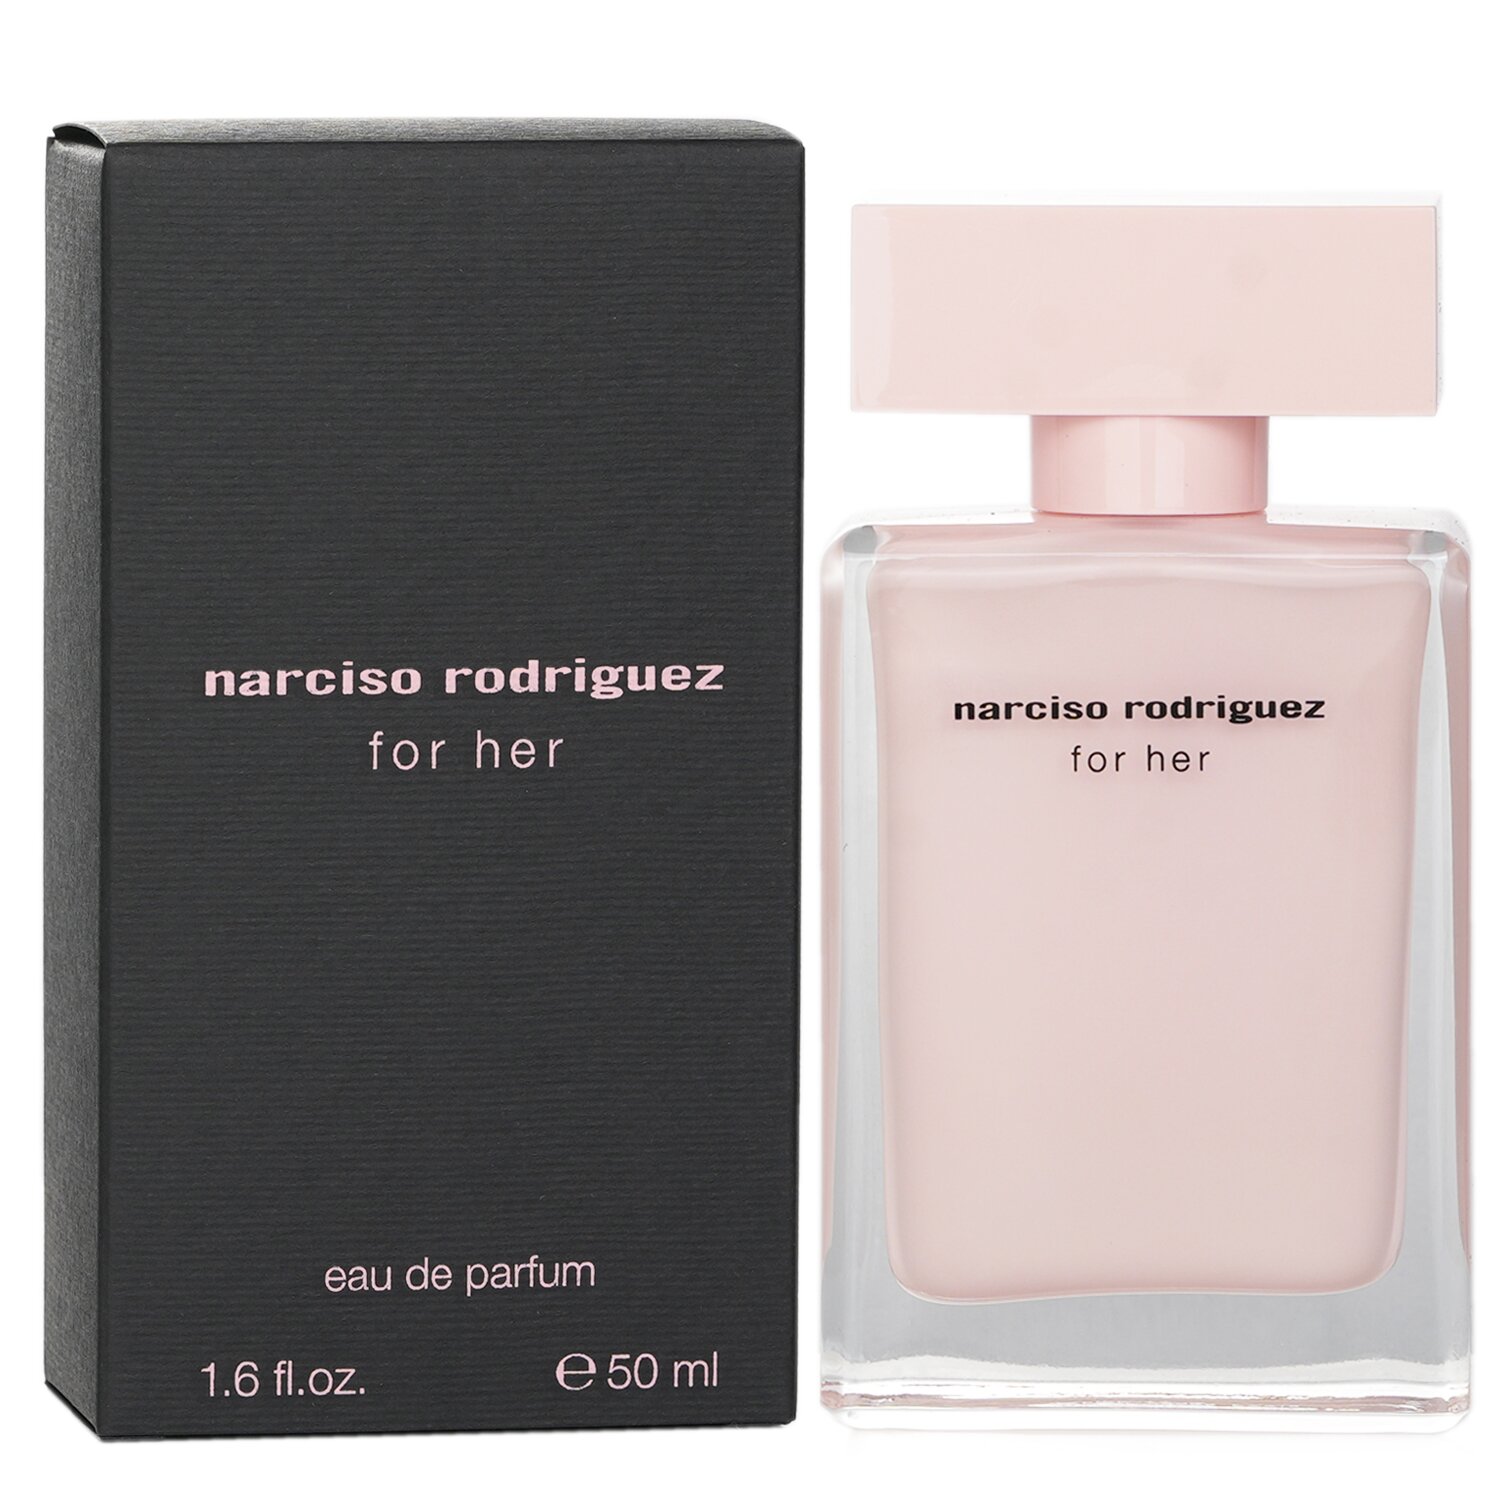 Narciso Rodriguez For Her Eau De Parfum Spray 50ml/1.7oz